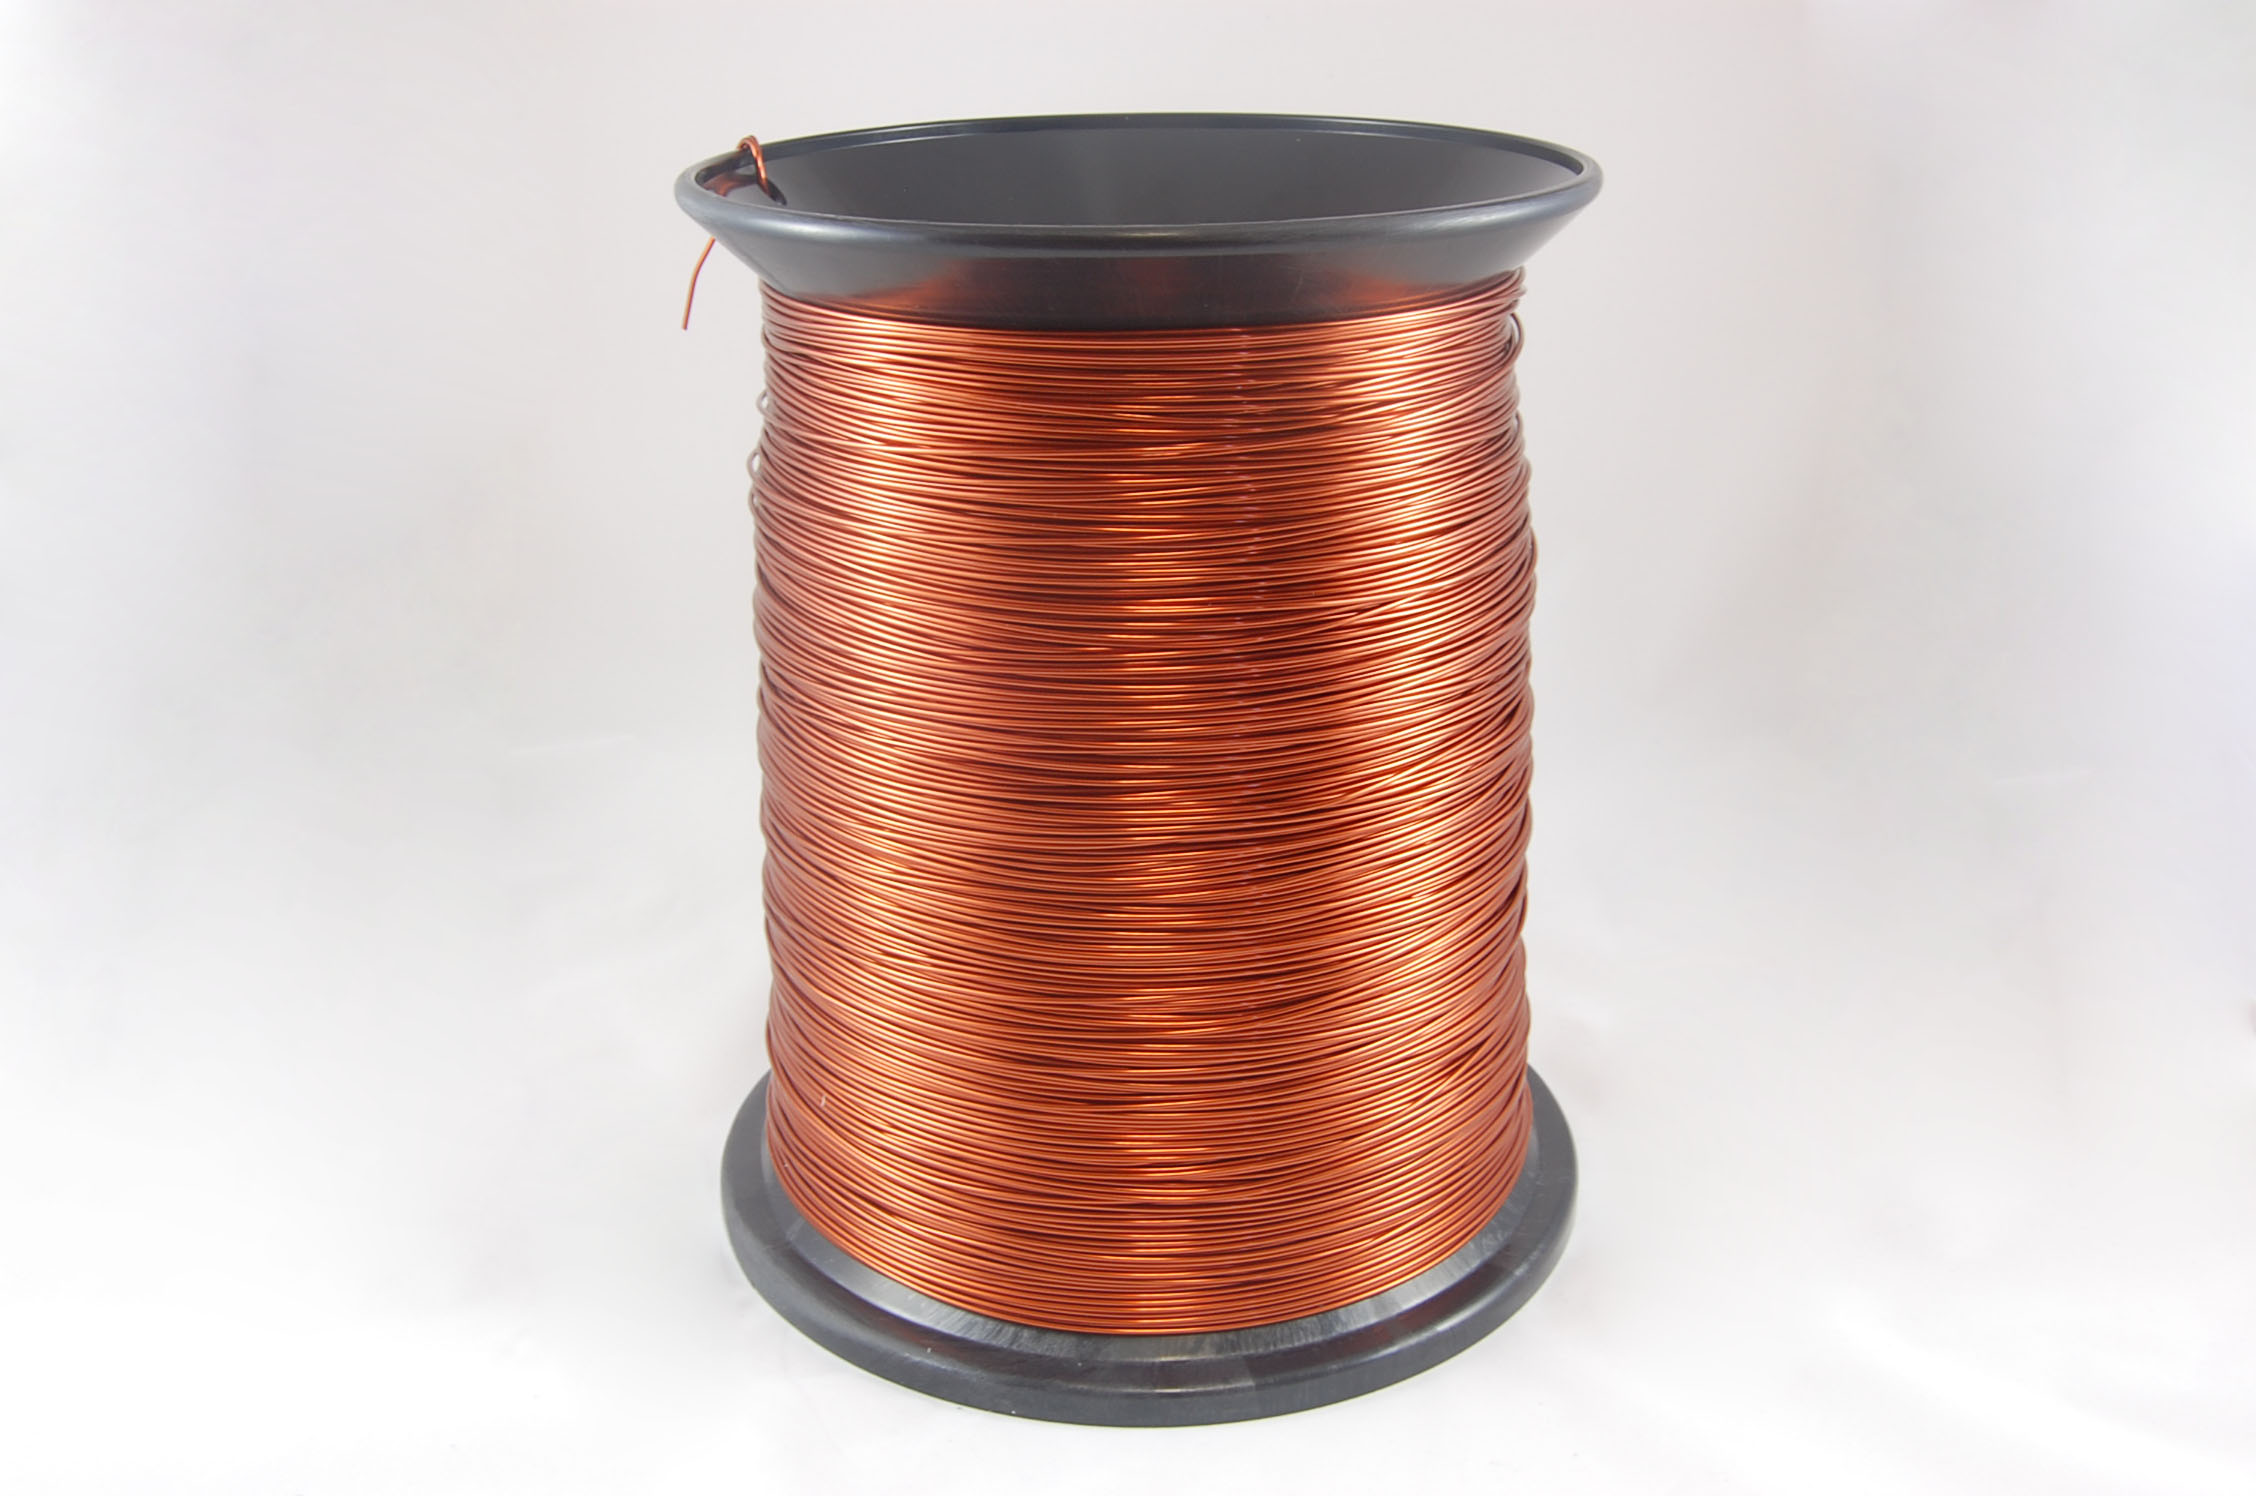 #17 Single GP/MR-200 Round MW 35 Copper Magnet Wire 200°C, copper, 85 LB box (average wght.)